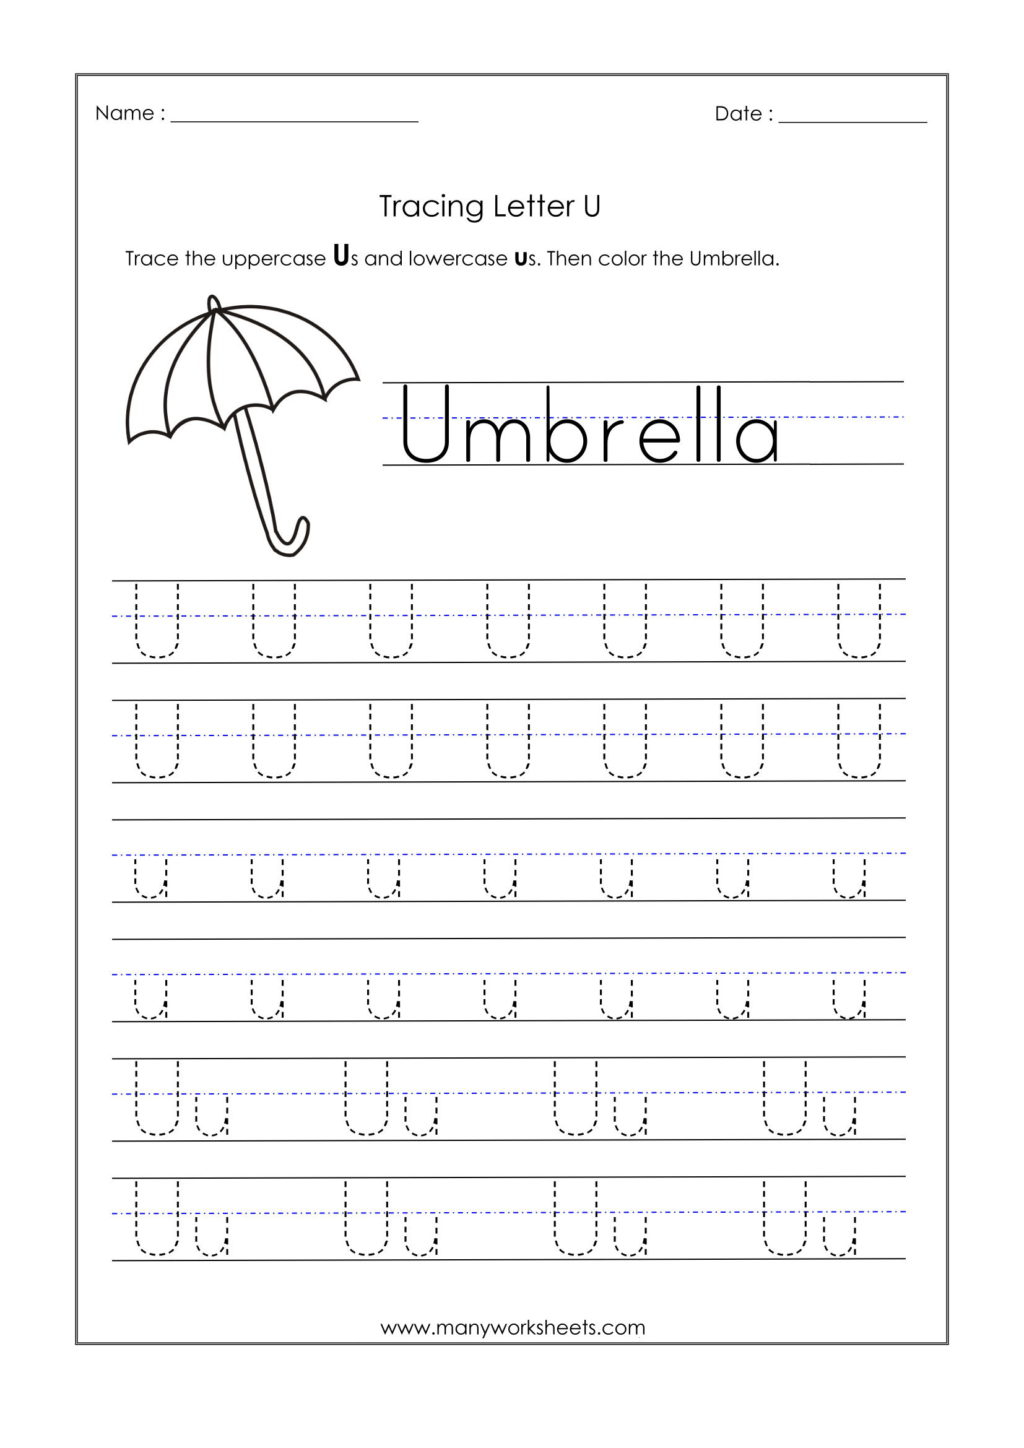 Worksheet ~ Letter U Worksheets For Kindergarten Trace intended for Letter U Worksheets For Toddlers